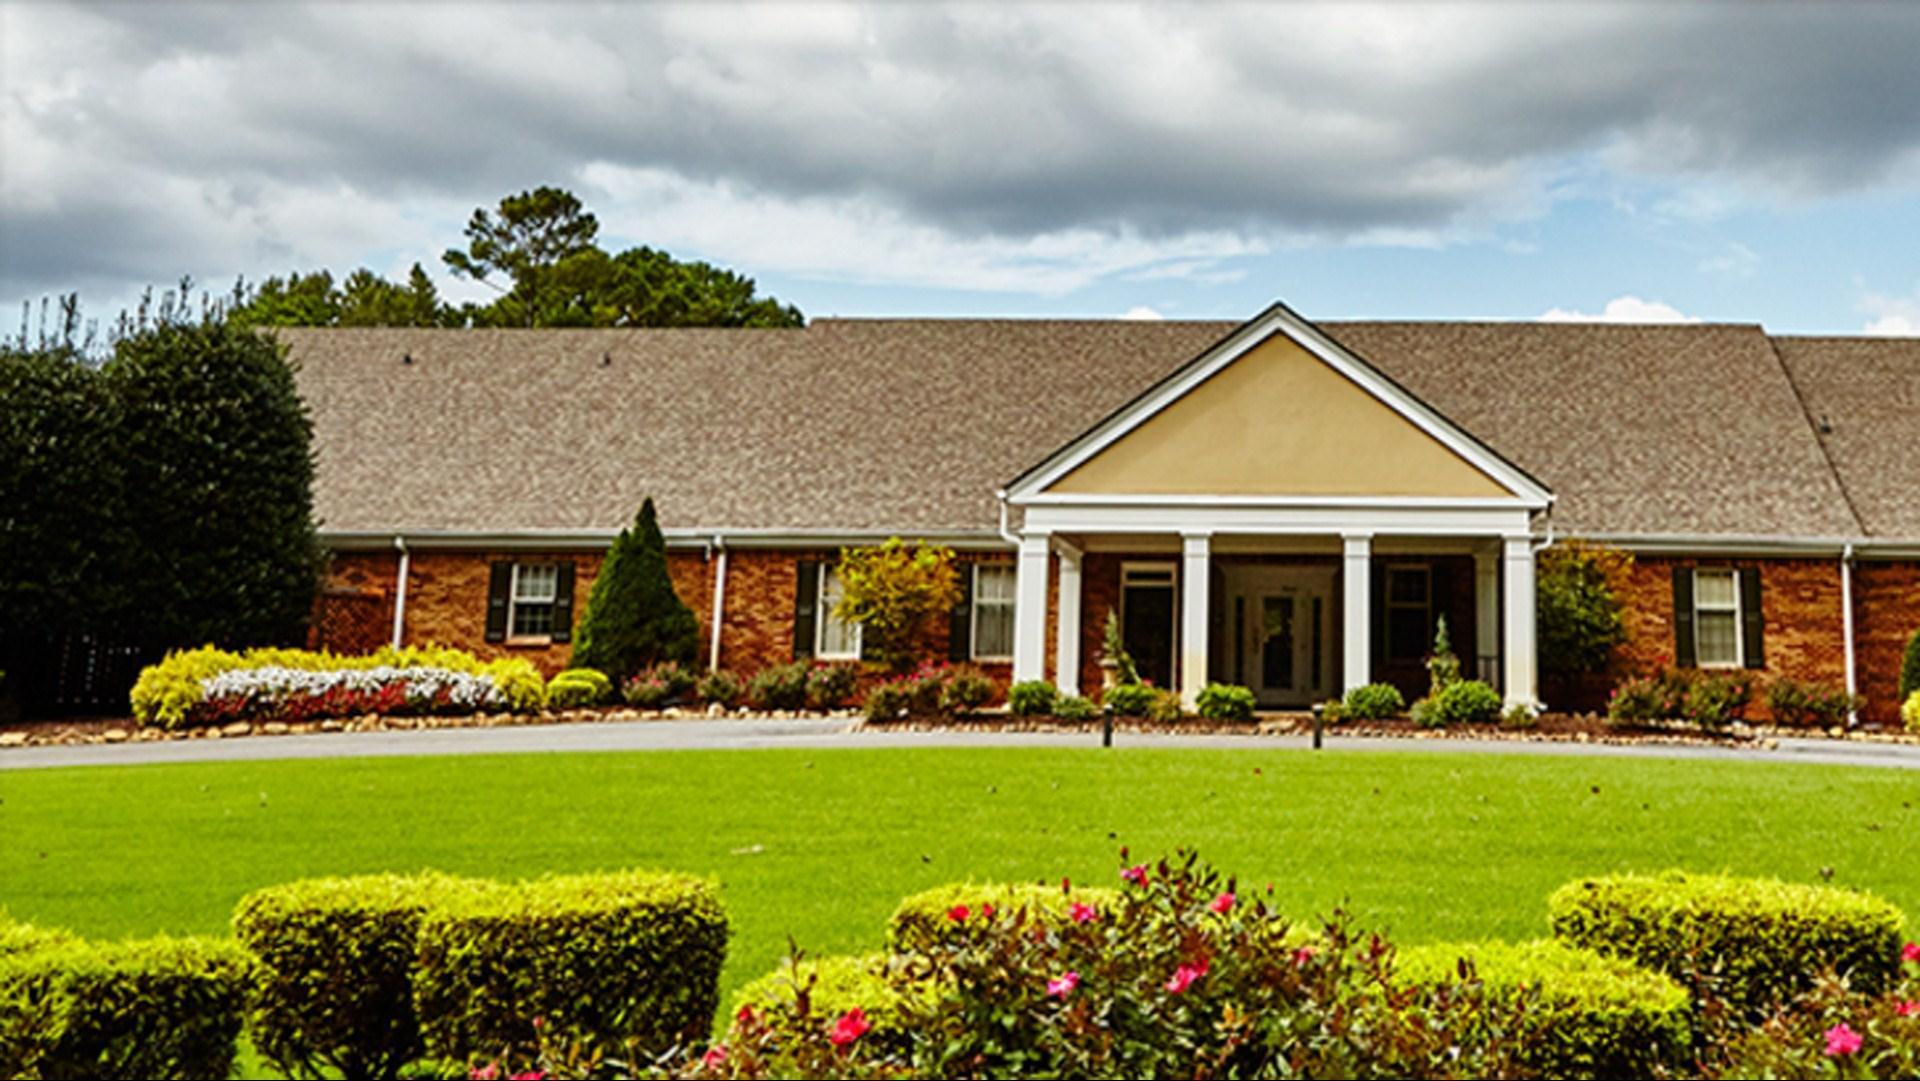 Canongate 1 Golf Club in Newnan, GA